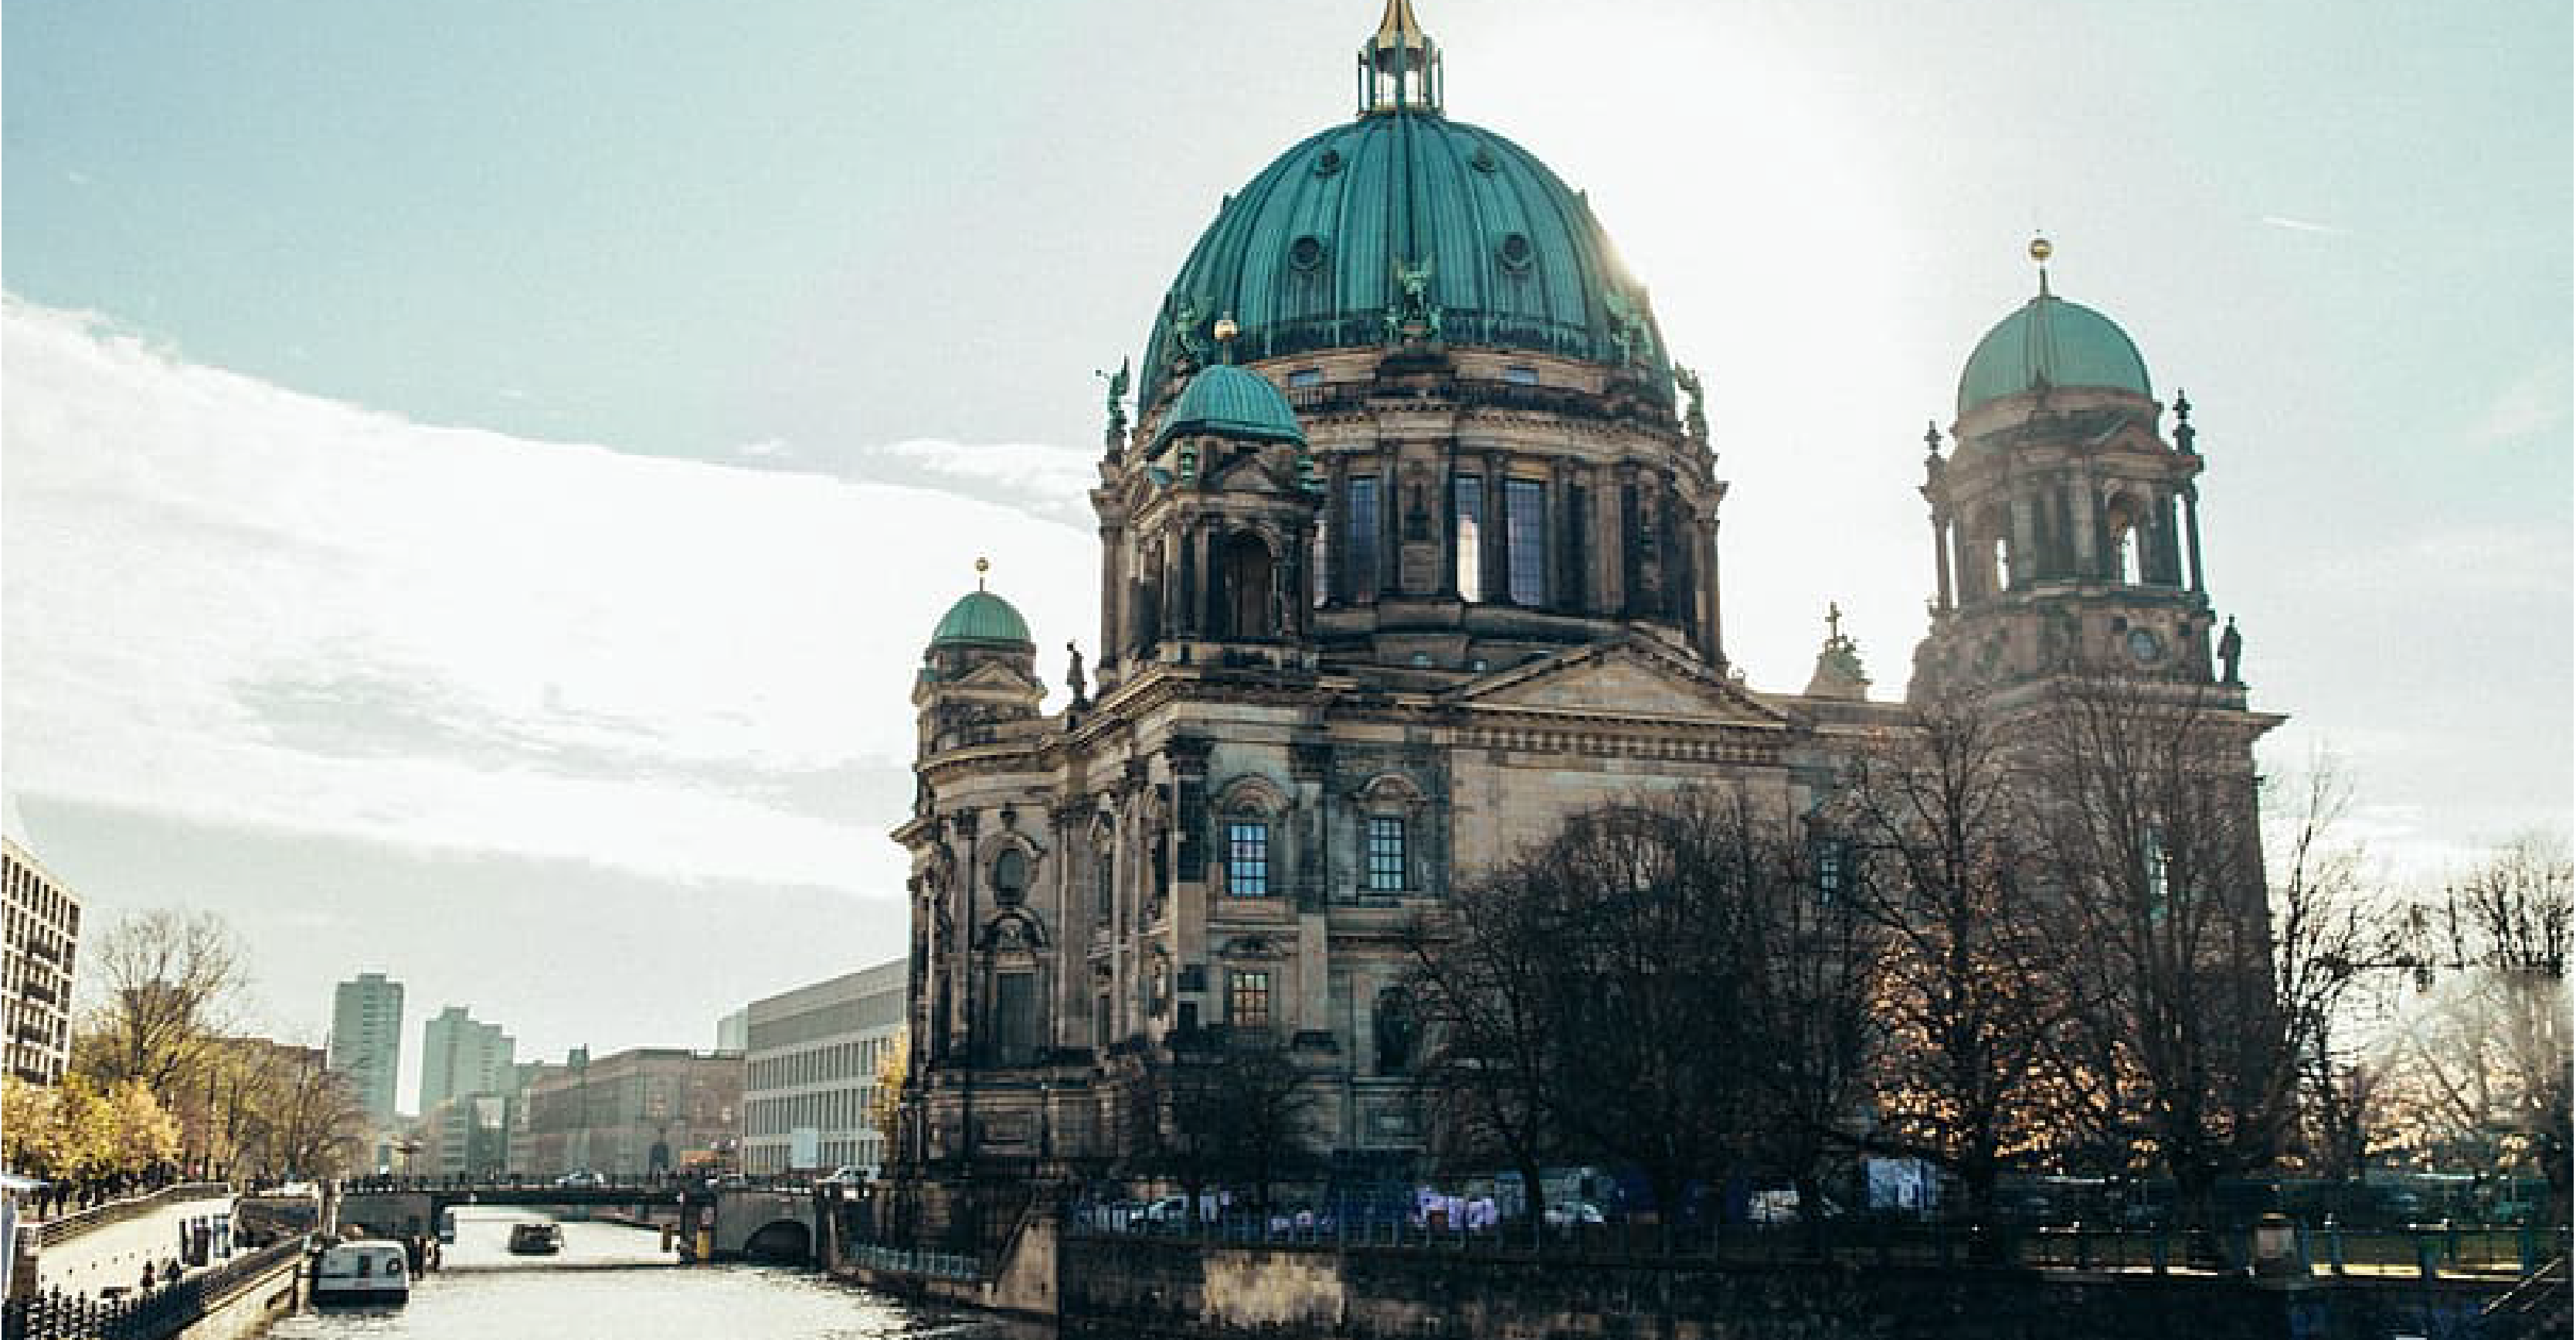 tour du lịch free & easy Đức - Thủ đô Berlin với những công trình kiến trúc nguy nga, tráng lệ